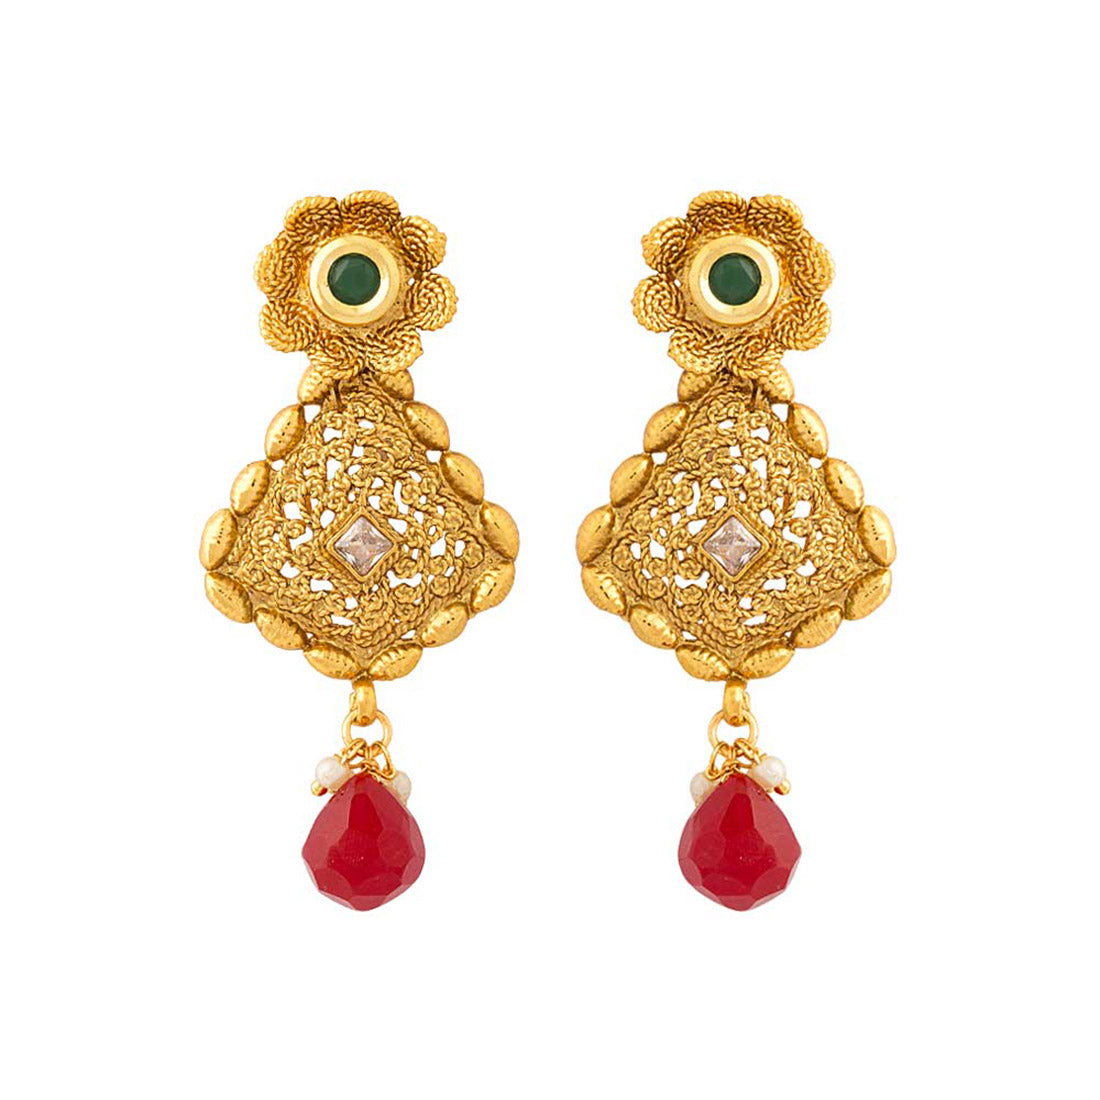 Designer Gold Plated earrings